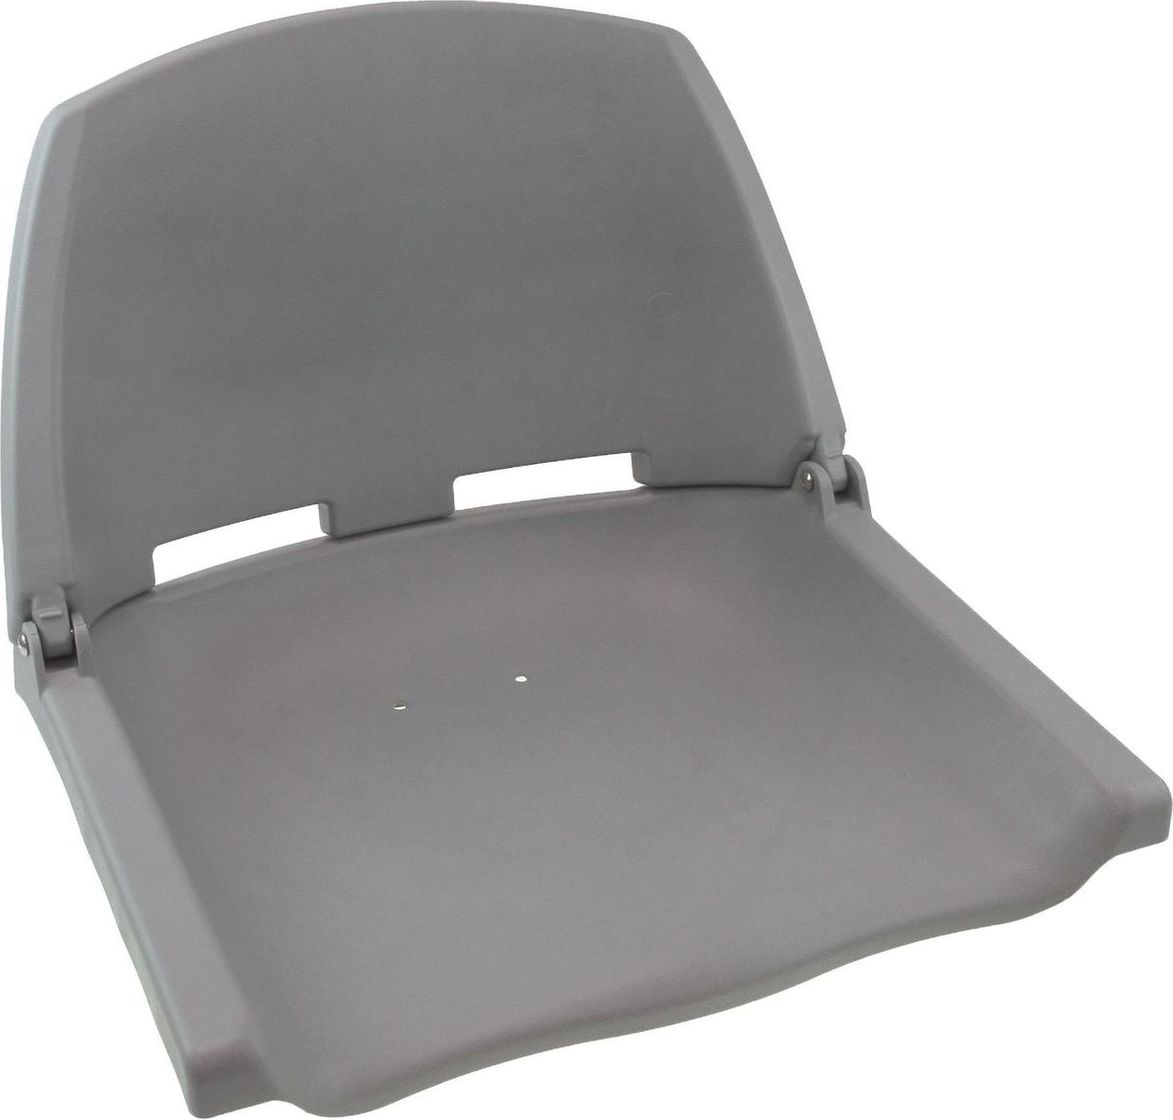 Кресло пластиковое серое (упаковка из 3 шт.) C12503G_pkg_3 подставка под кресло вращающаяся с креплением к баночке надувной лодки упаковка из 2 шт c12565 pkg 2